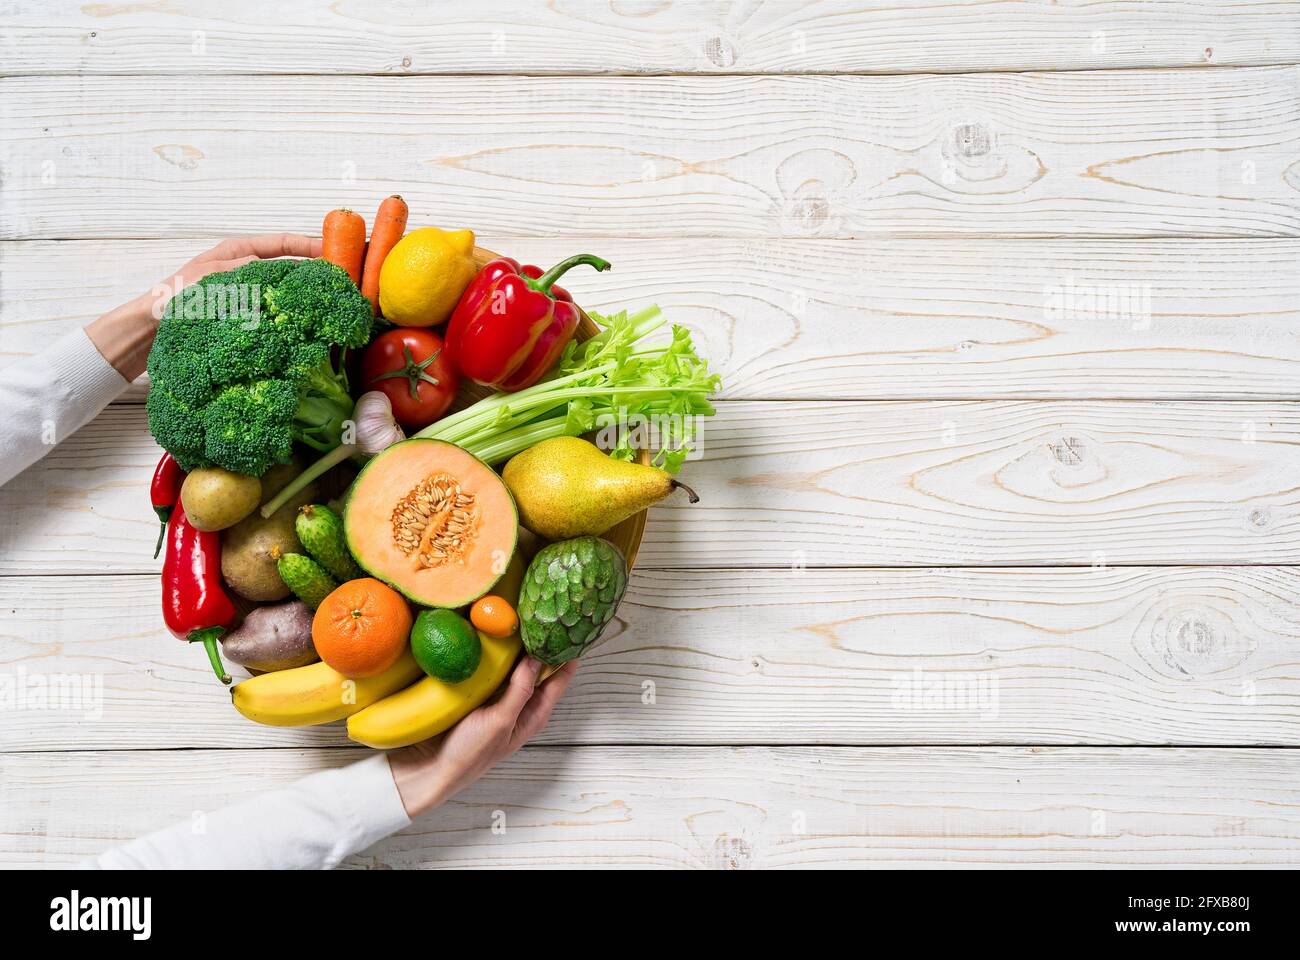 Piatto con verdure e frutta su tavola di legno. Cibo sano, vista dall'alto. Foto Stock